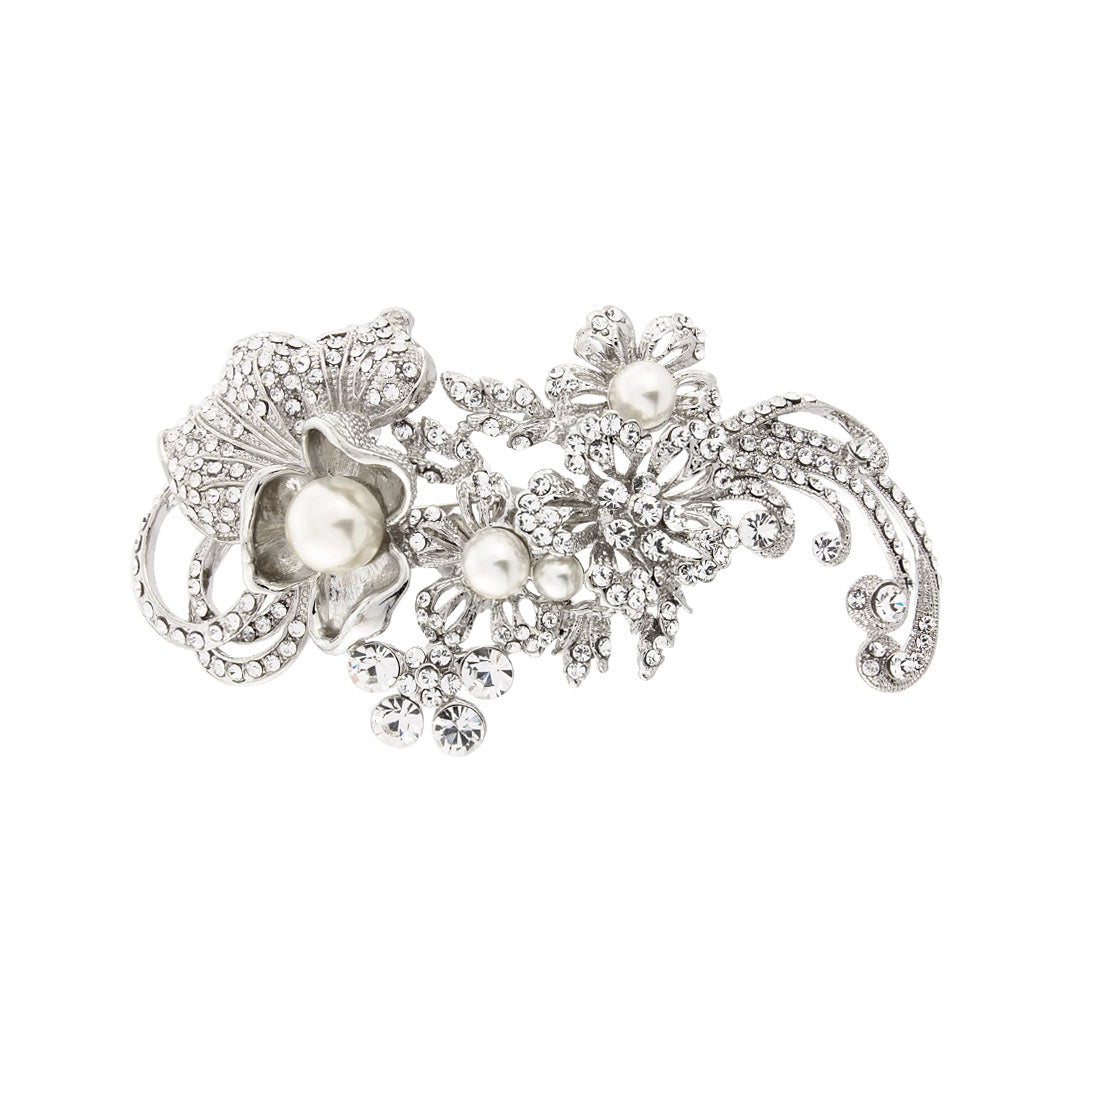 Blooms of Elegance Floral Pearl & Crystal Wedding Headpiece